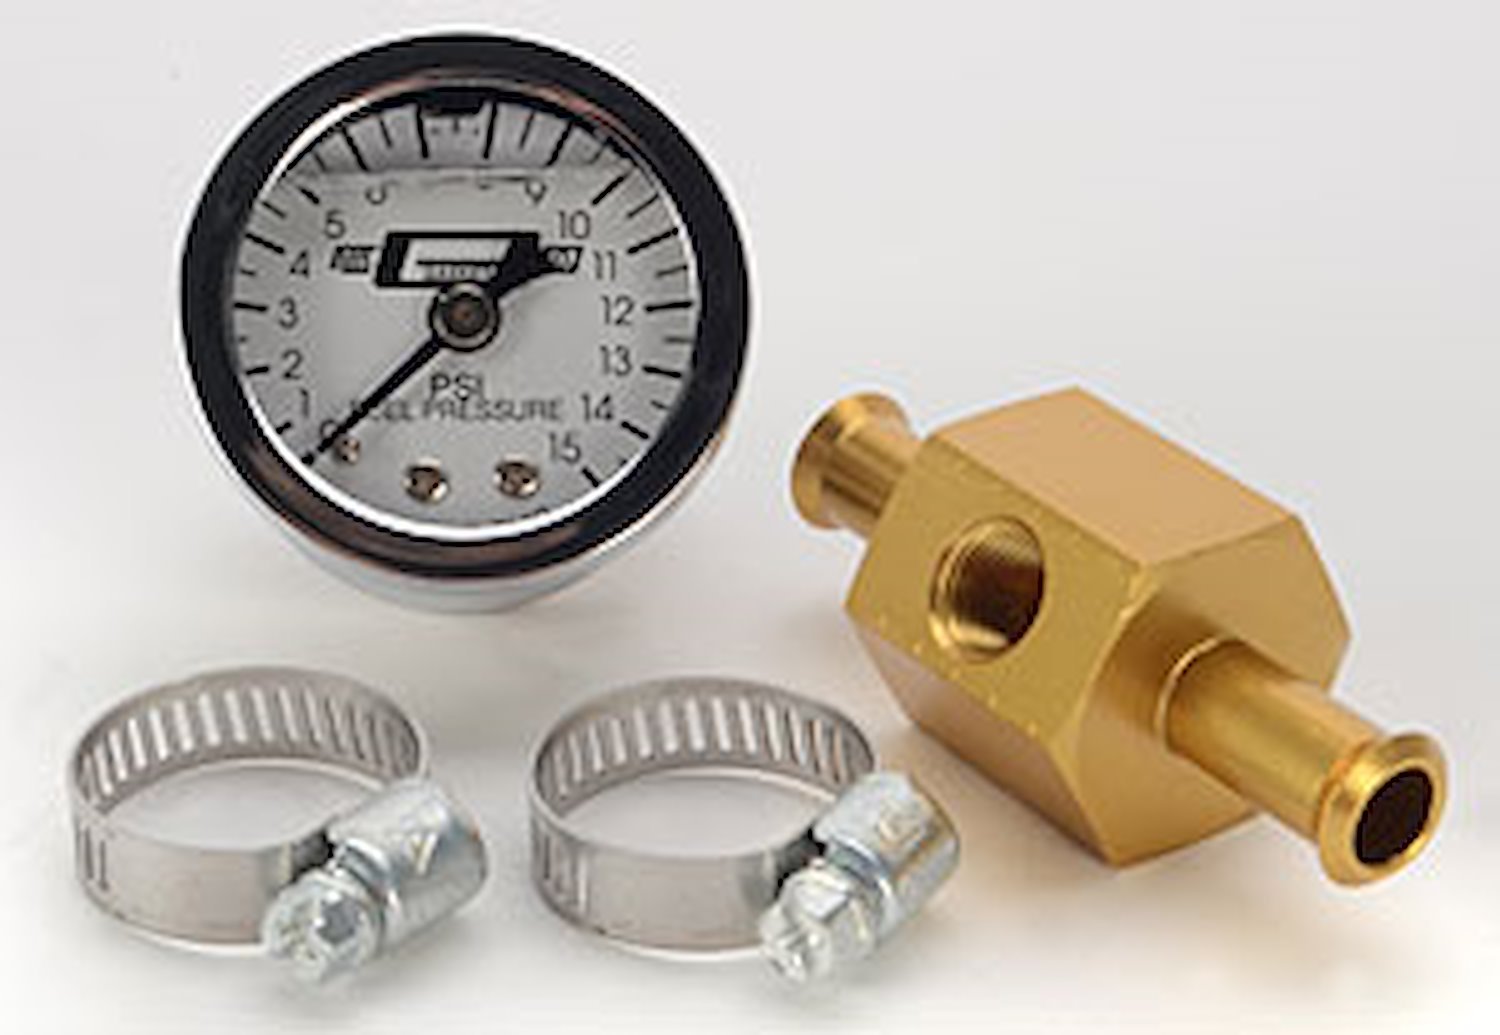 Fuel Pressure Gauge 3/8" Inlet & Outlet